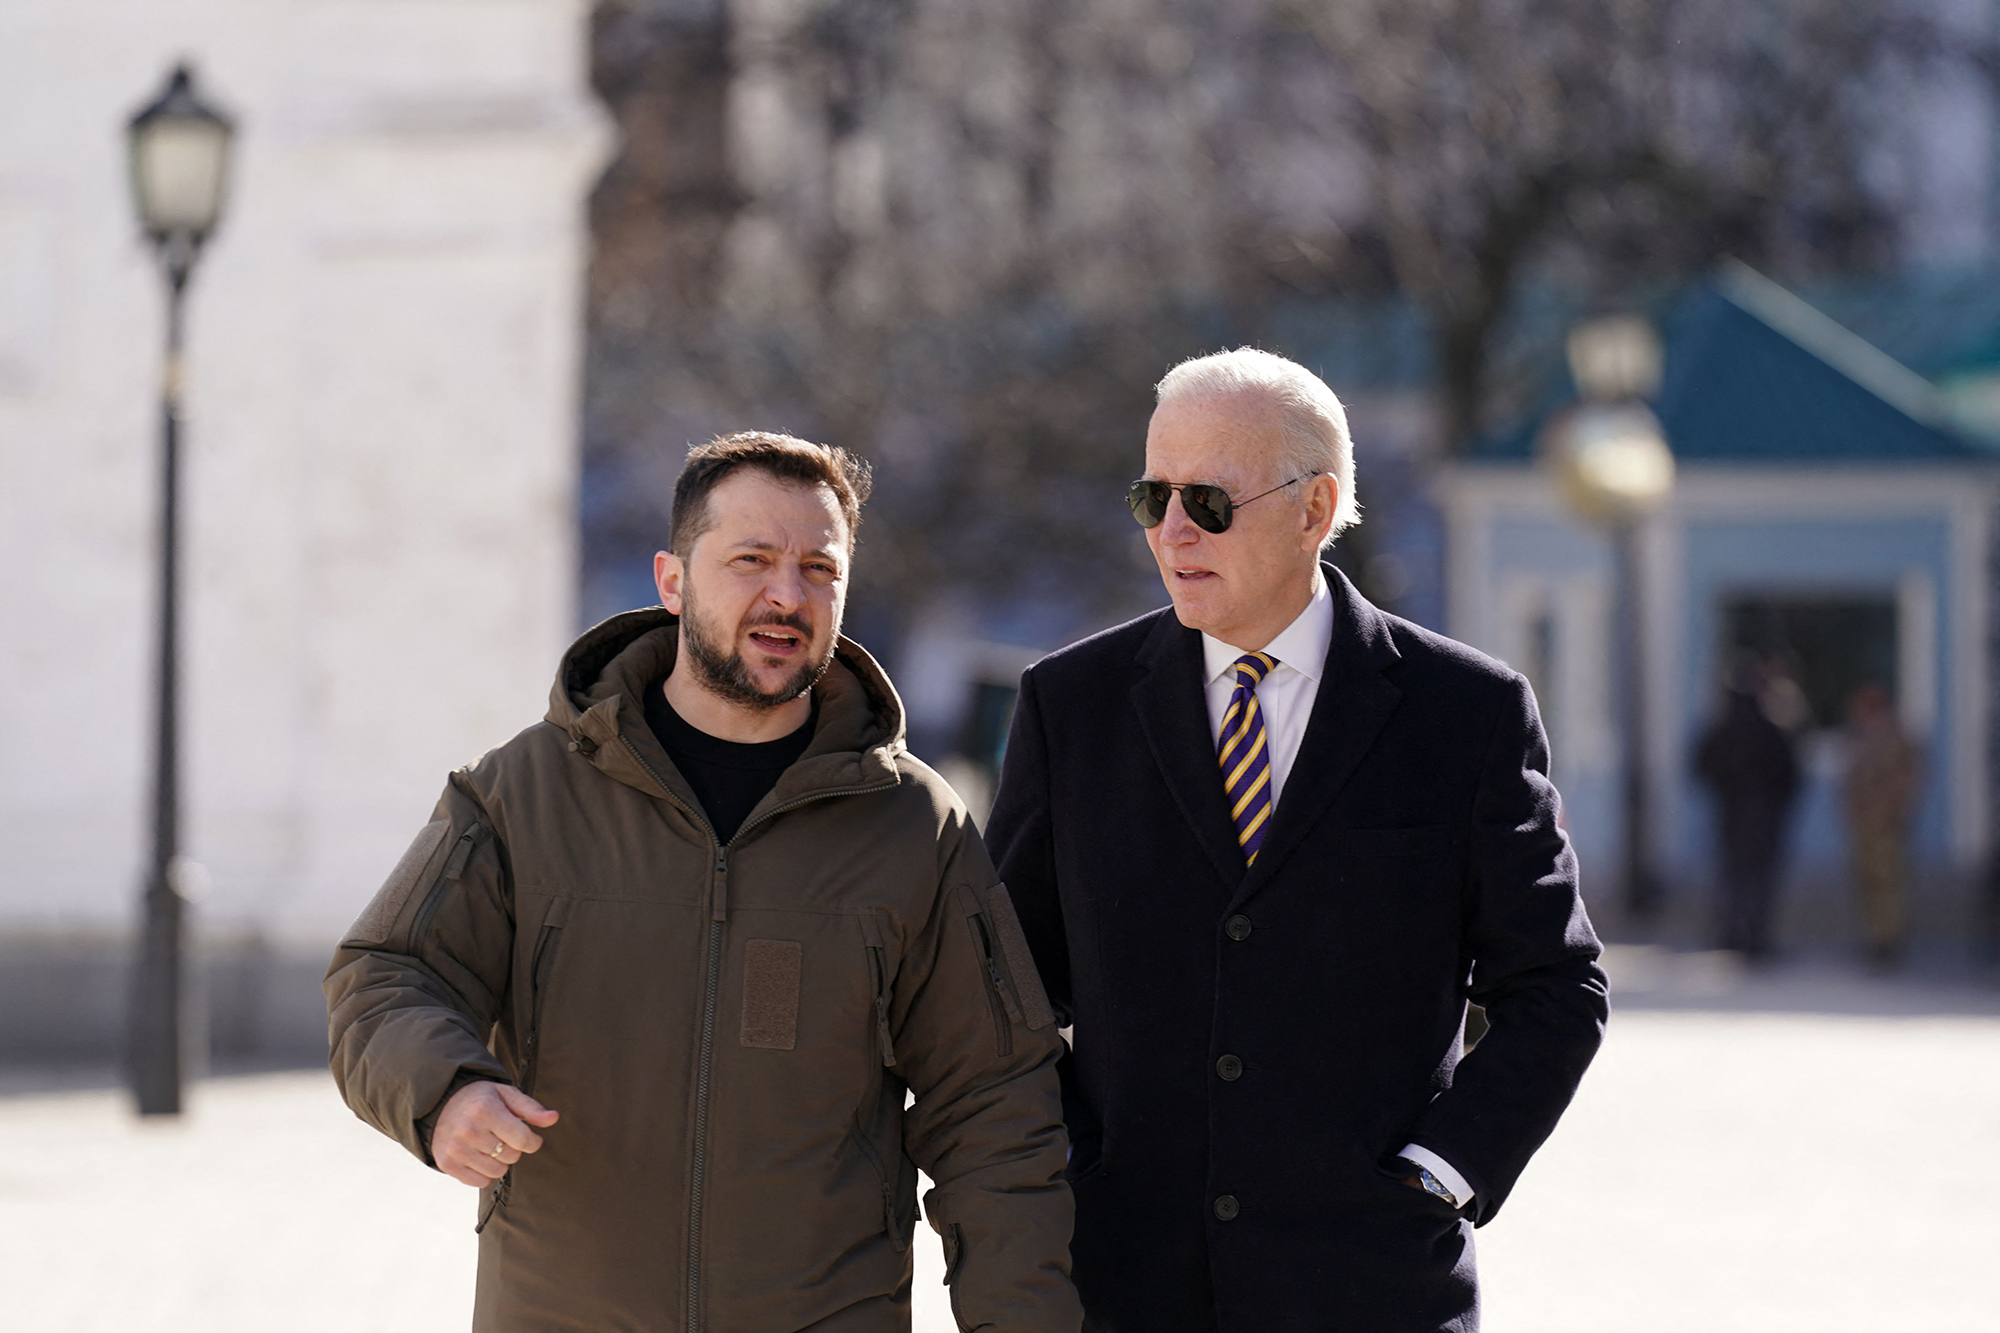 President Joe Biden walks next to Ukrainian President Volodymyr Zelensky as he arrives for a visit in Kyiv on February 20.